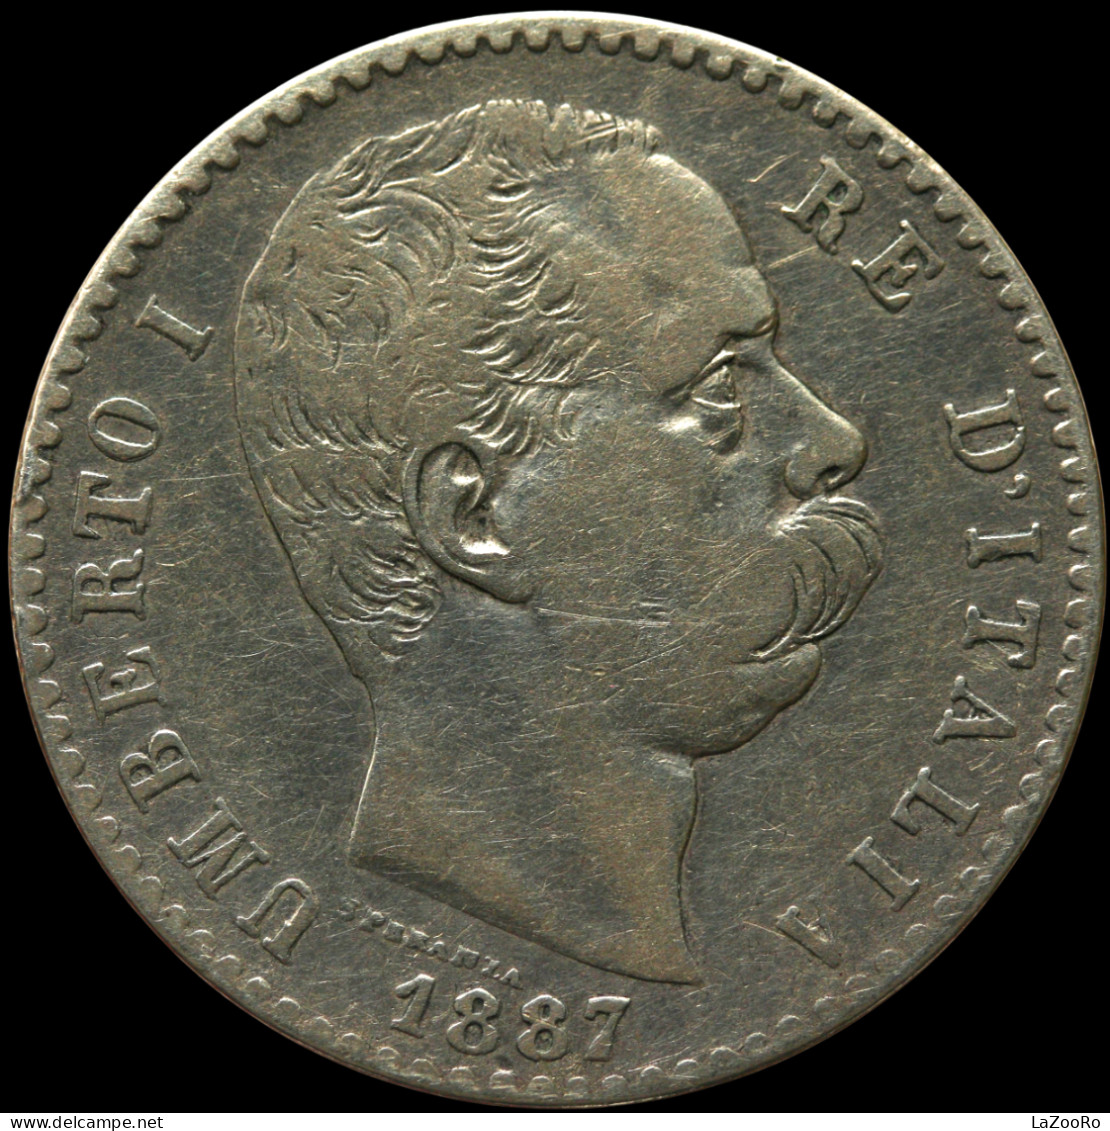 LaZooRo: Italy 2 Lire 1887 R VF - Silver - 1878-1900 : Umberto I